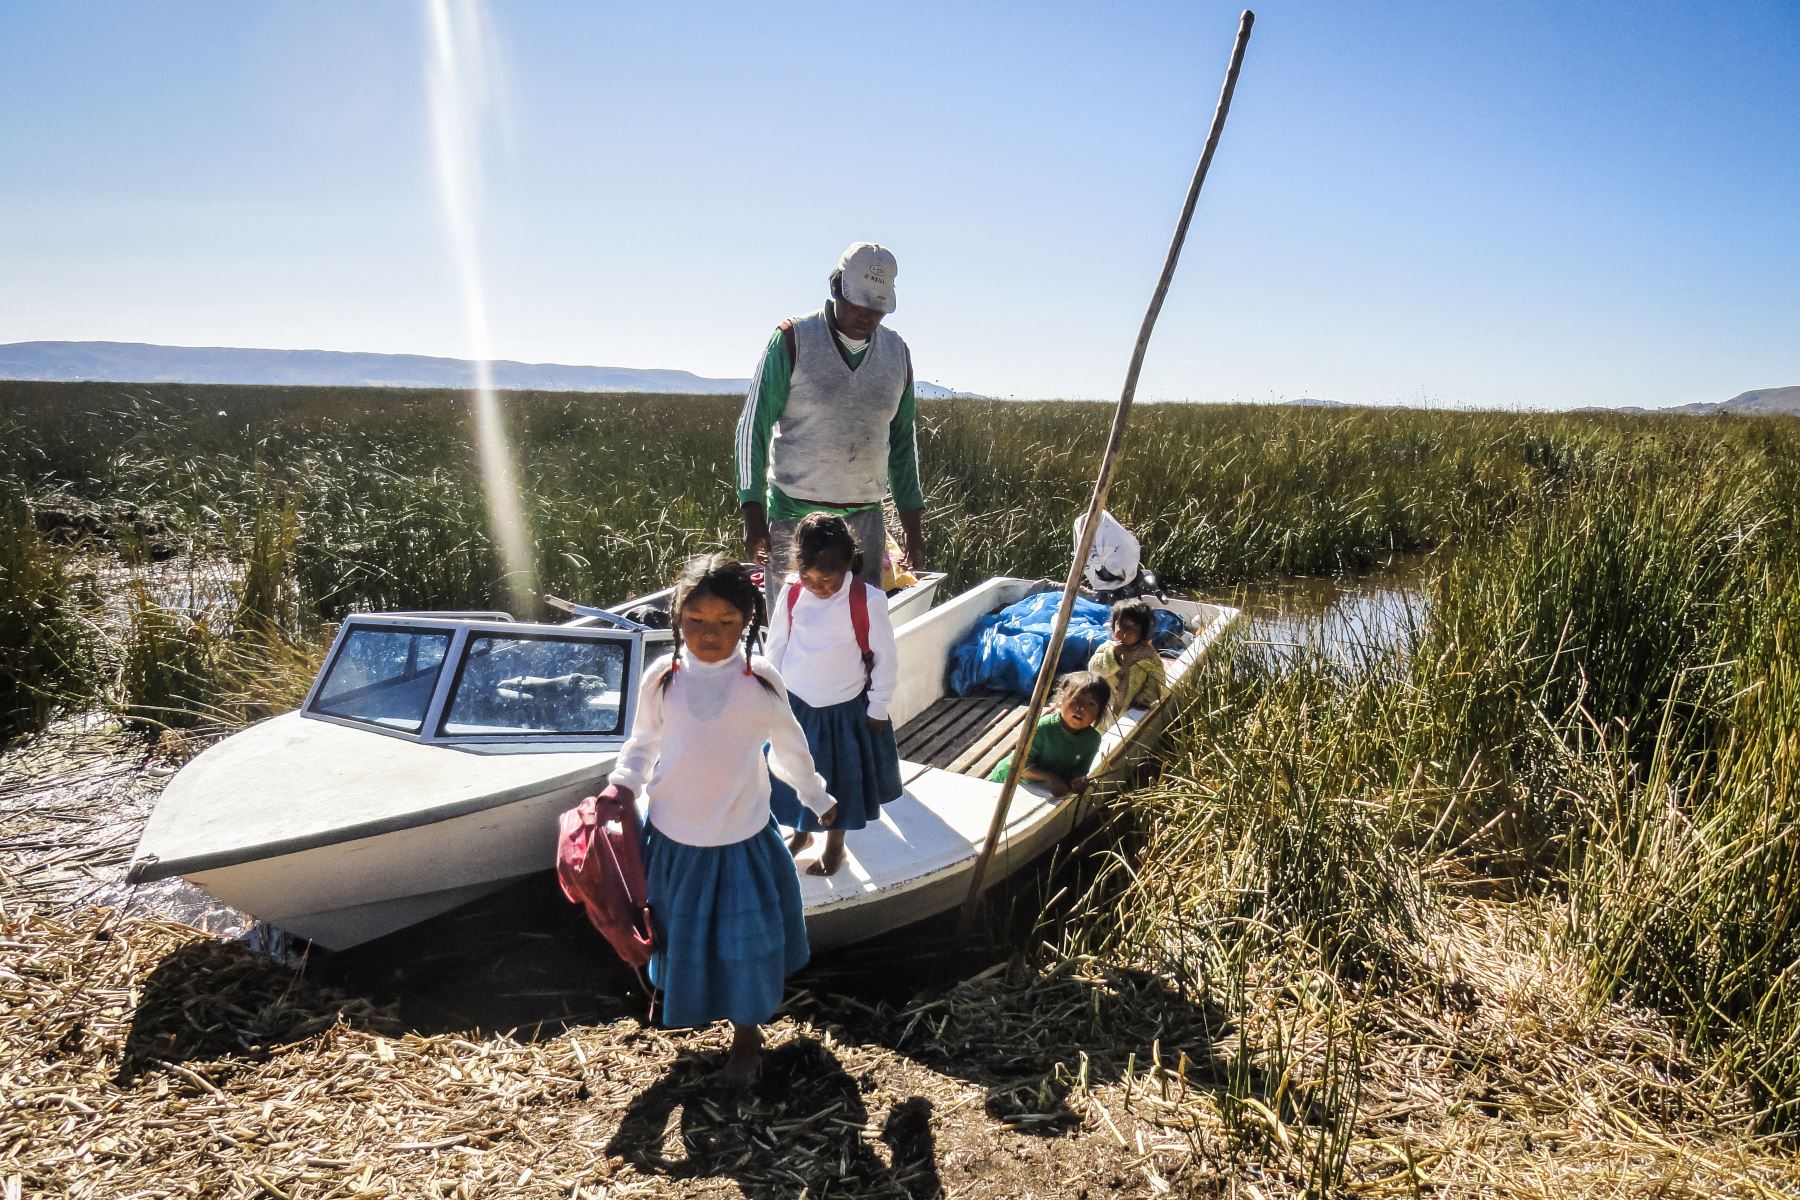 Niños, niñas y adolescentes del pueblo originario Uro fueron partícipes del  proyecto «Qhas Qot Zuñinaka» “las personas de agua y lago”, que tiene como objetivo revalorar sus costumbres a través de la fotografía.
Foto: ANDINA/Cortesía Colectivo HATUN ÑAKAJ